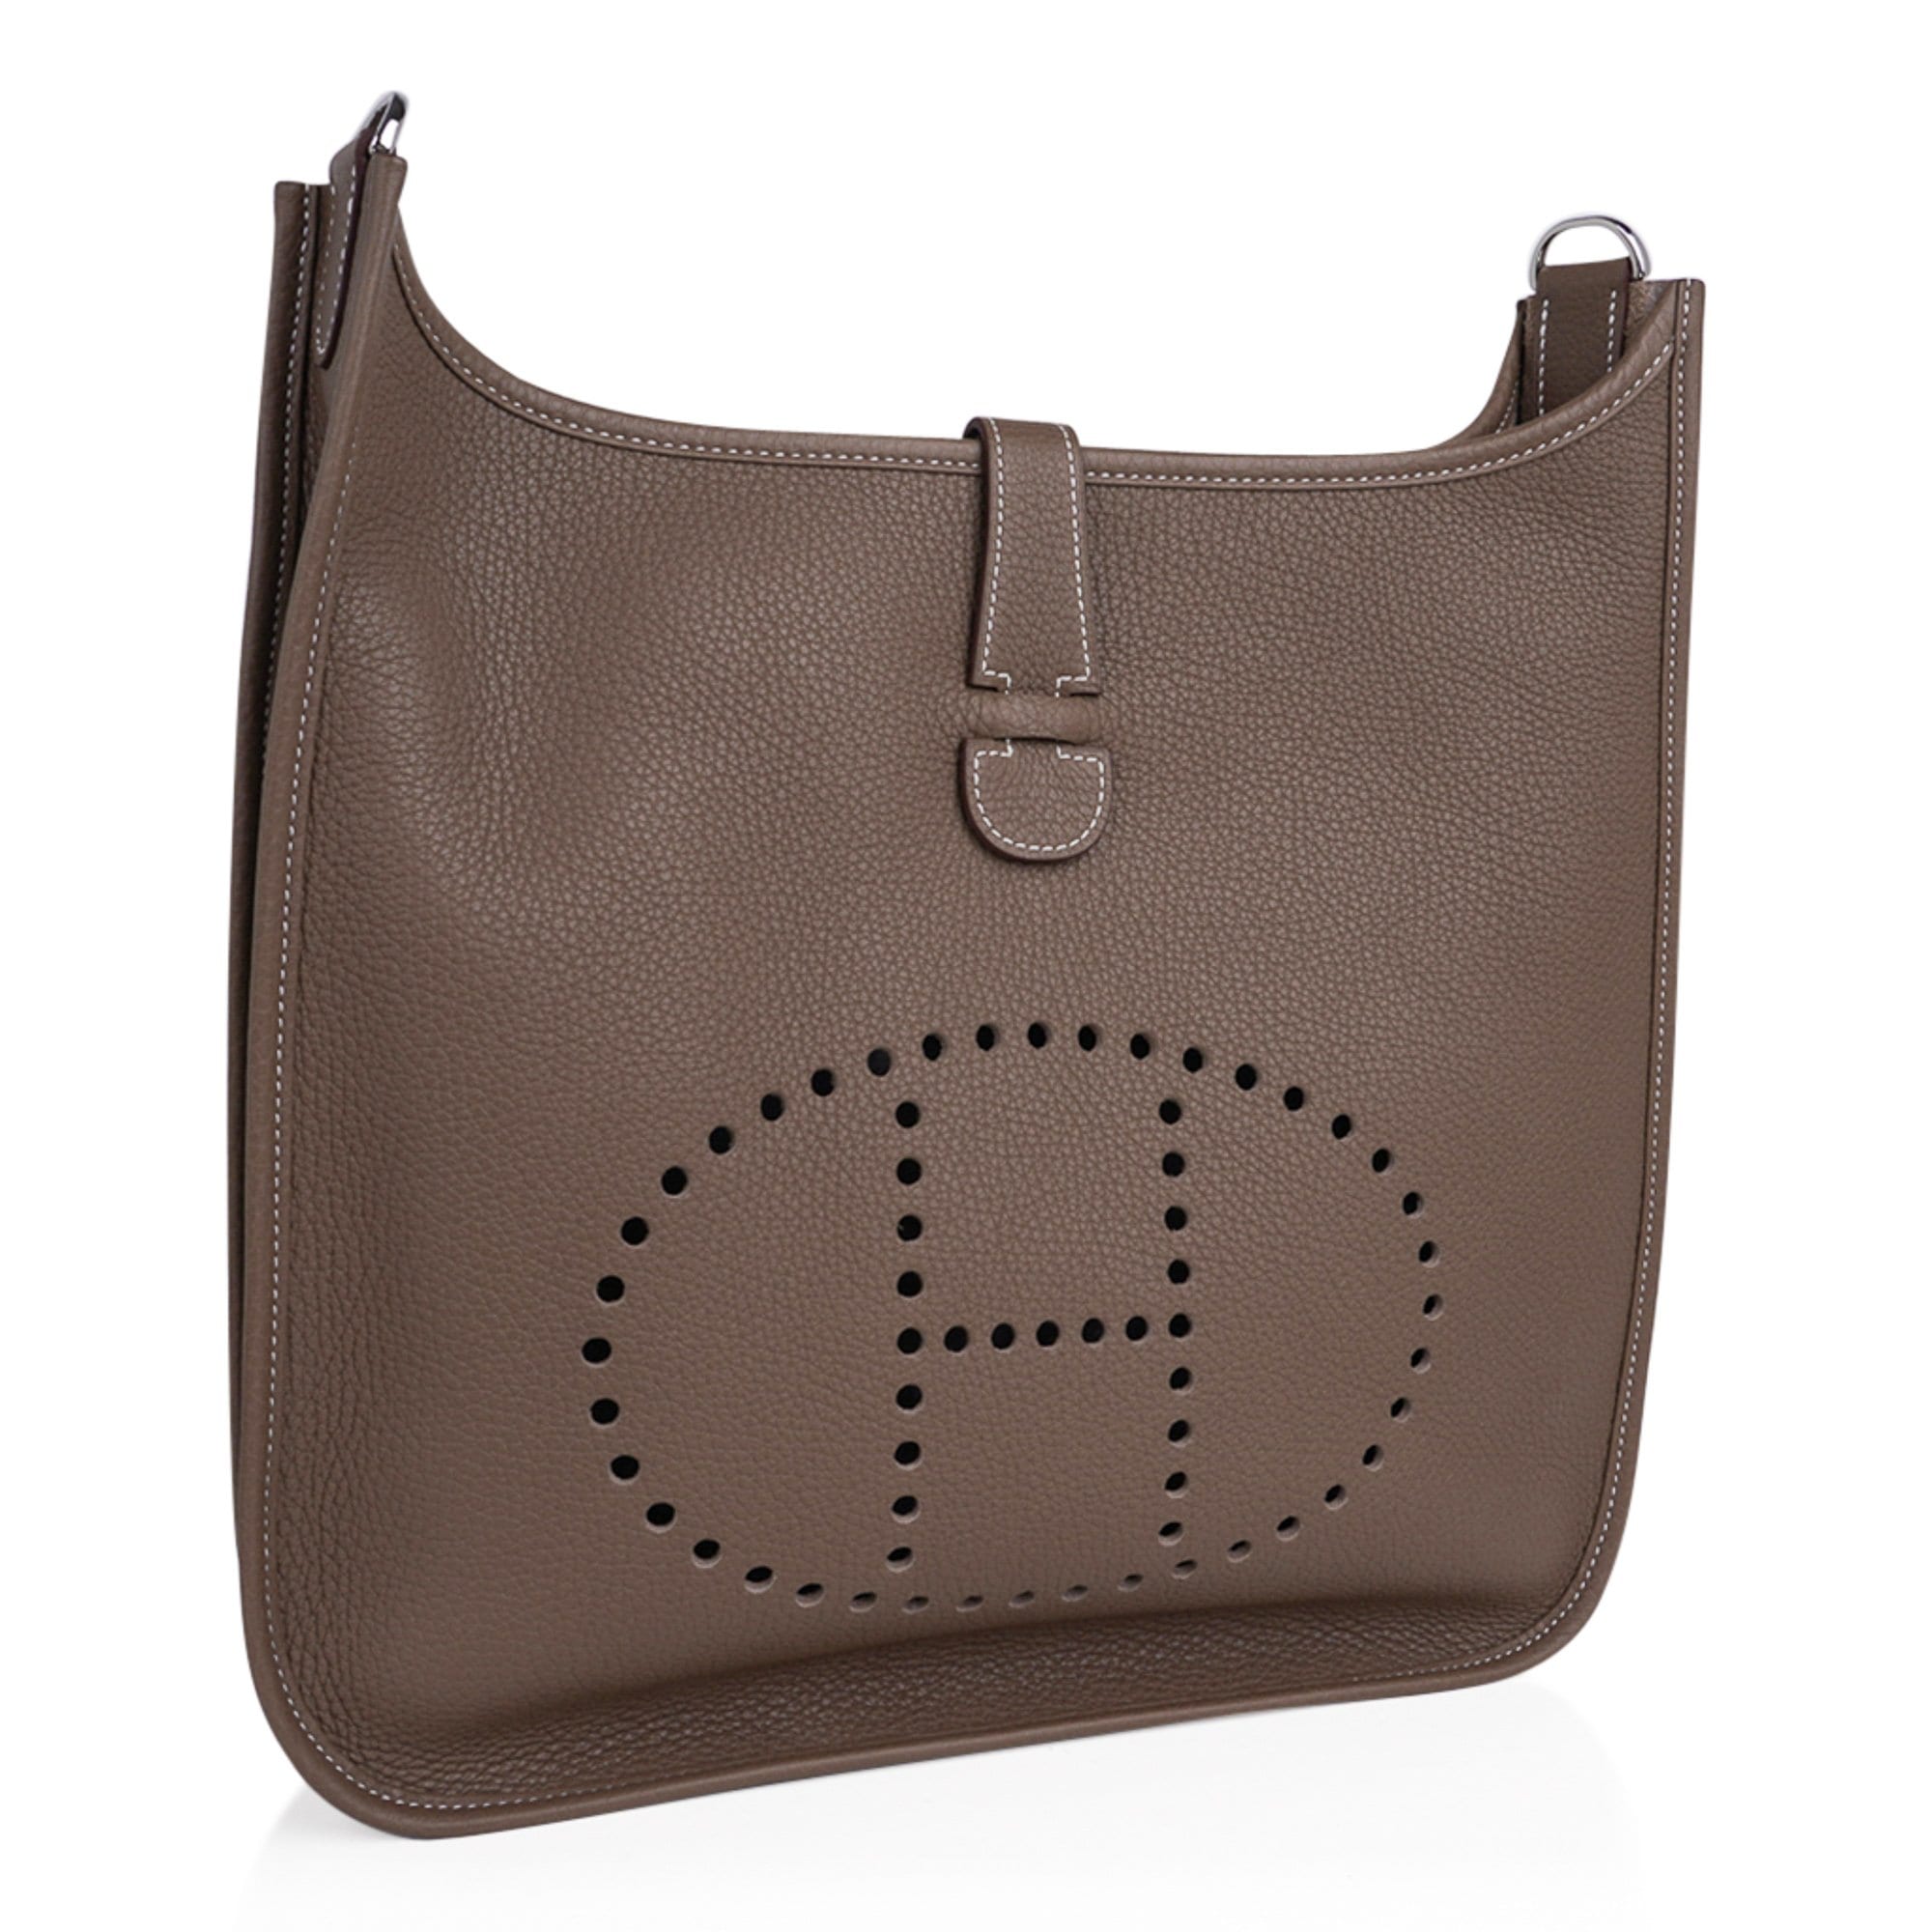 Hermes quality, stainless steel, H Evelyne bag hardware kit, TPM, GM32